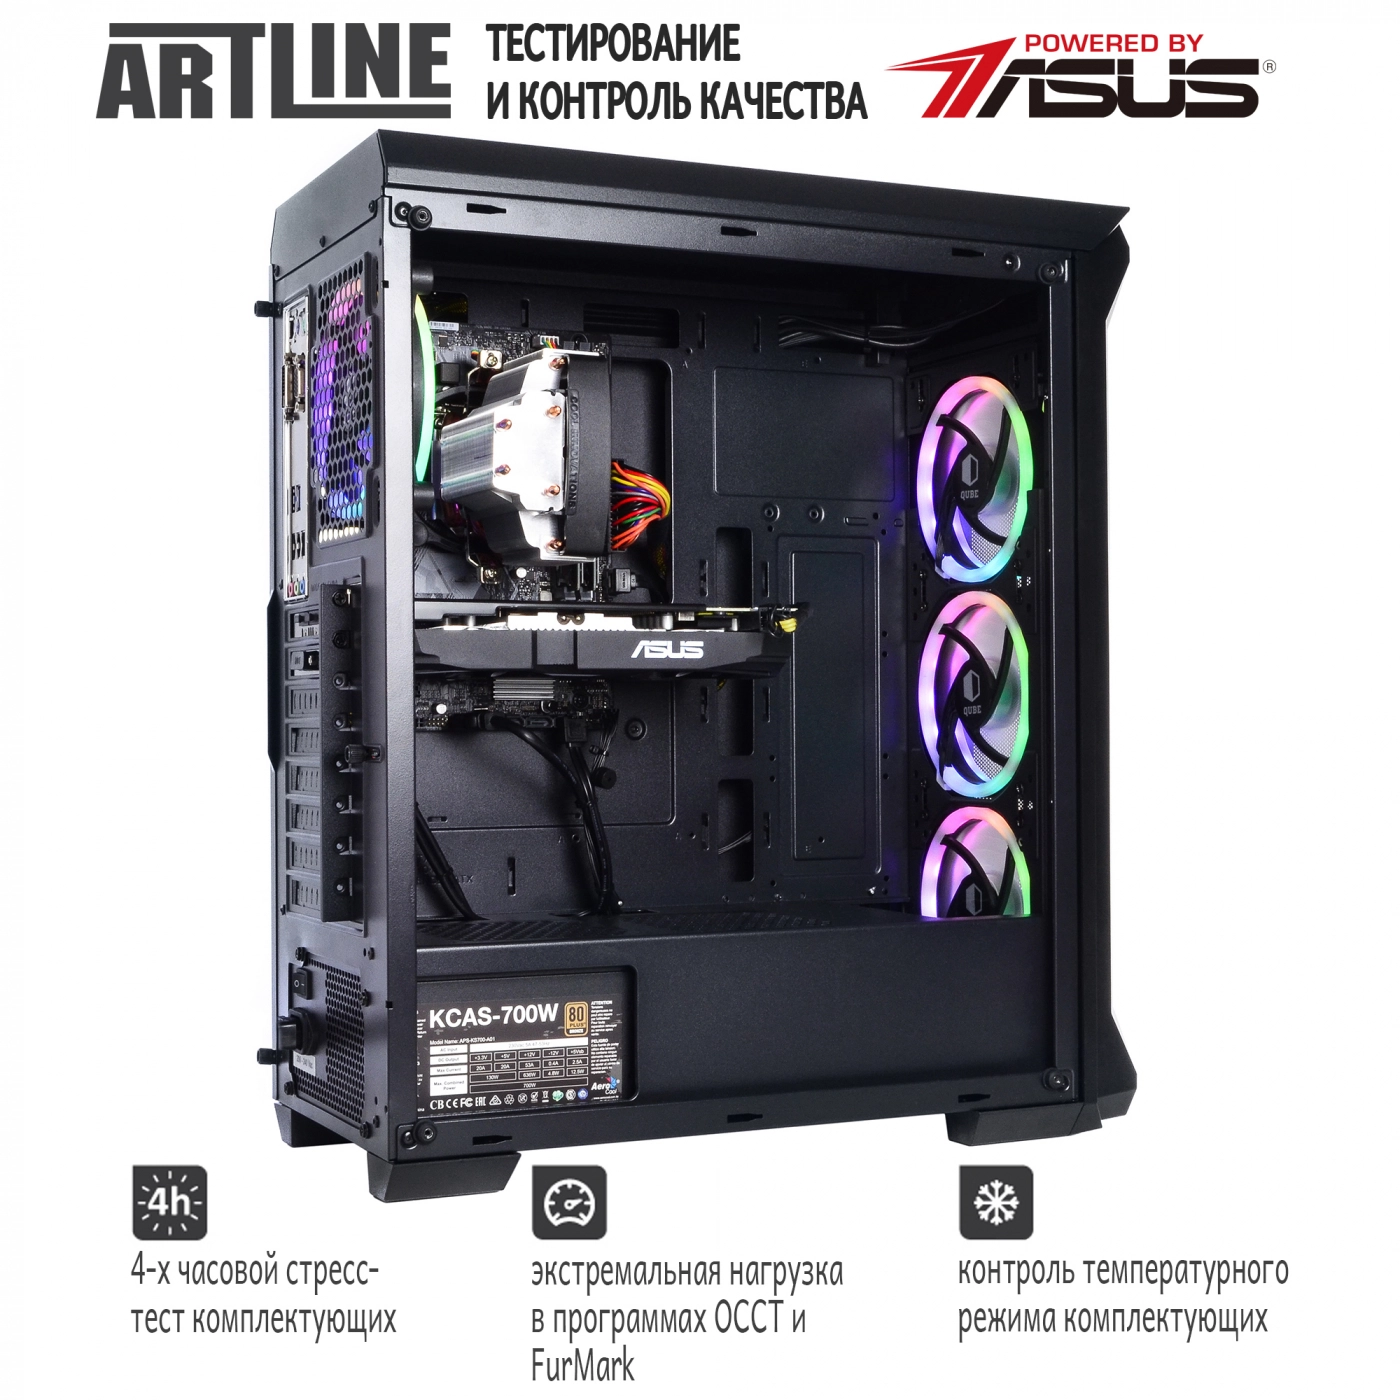 Купить Компьютер ARTLINE Gaming X73v17 - фото 6